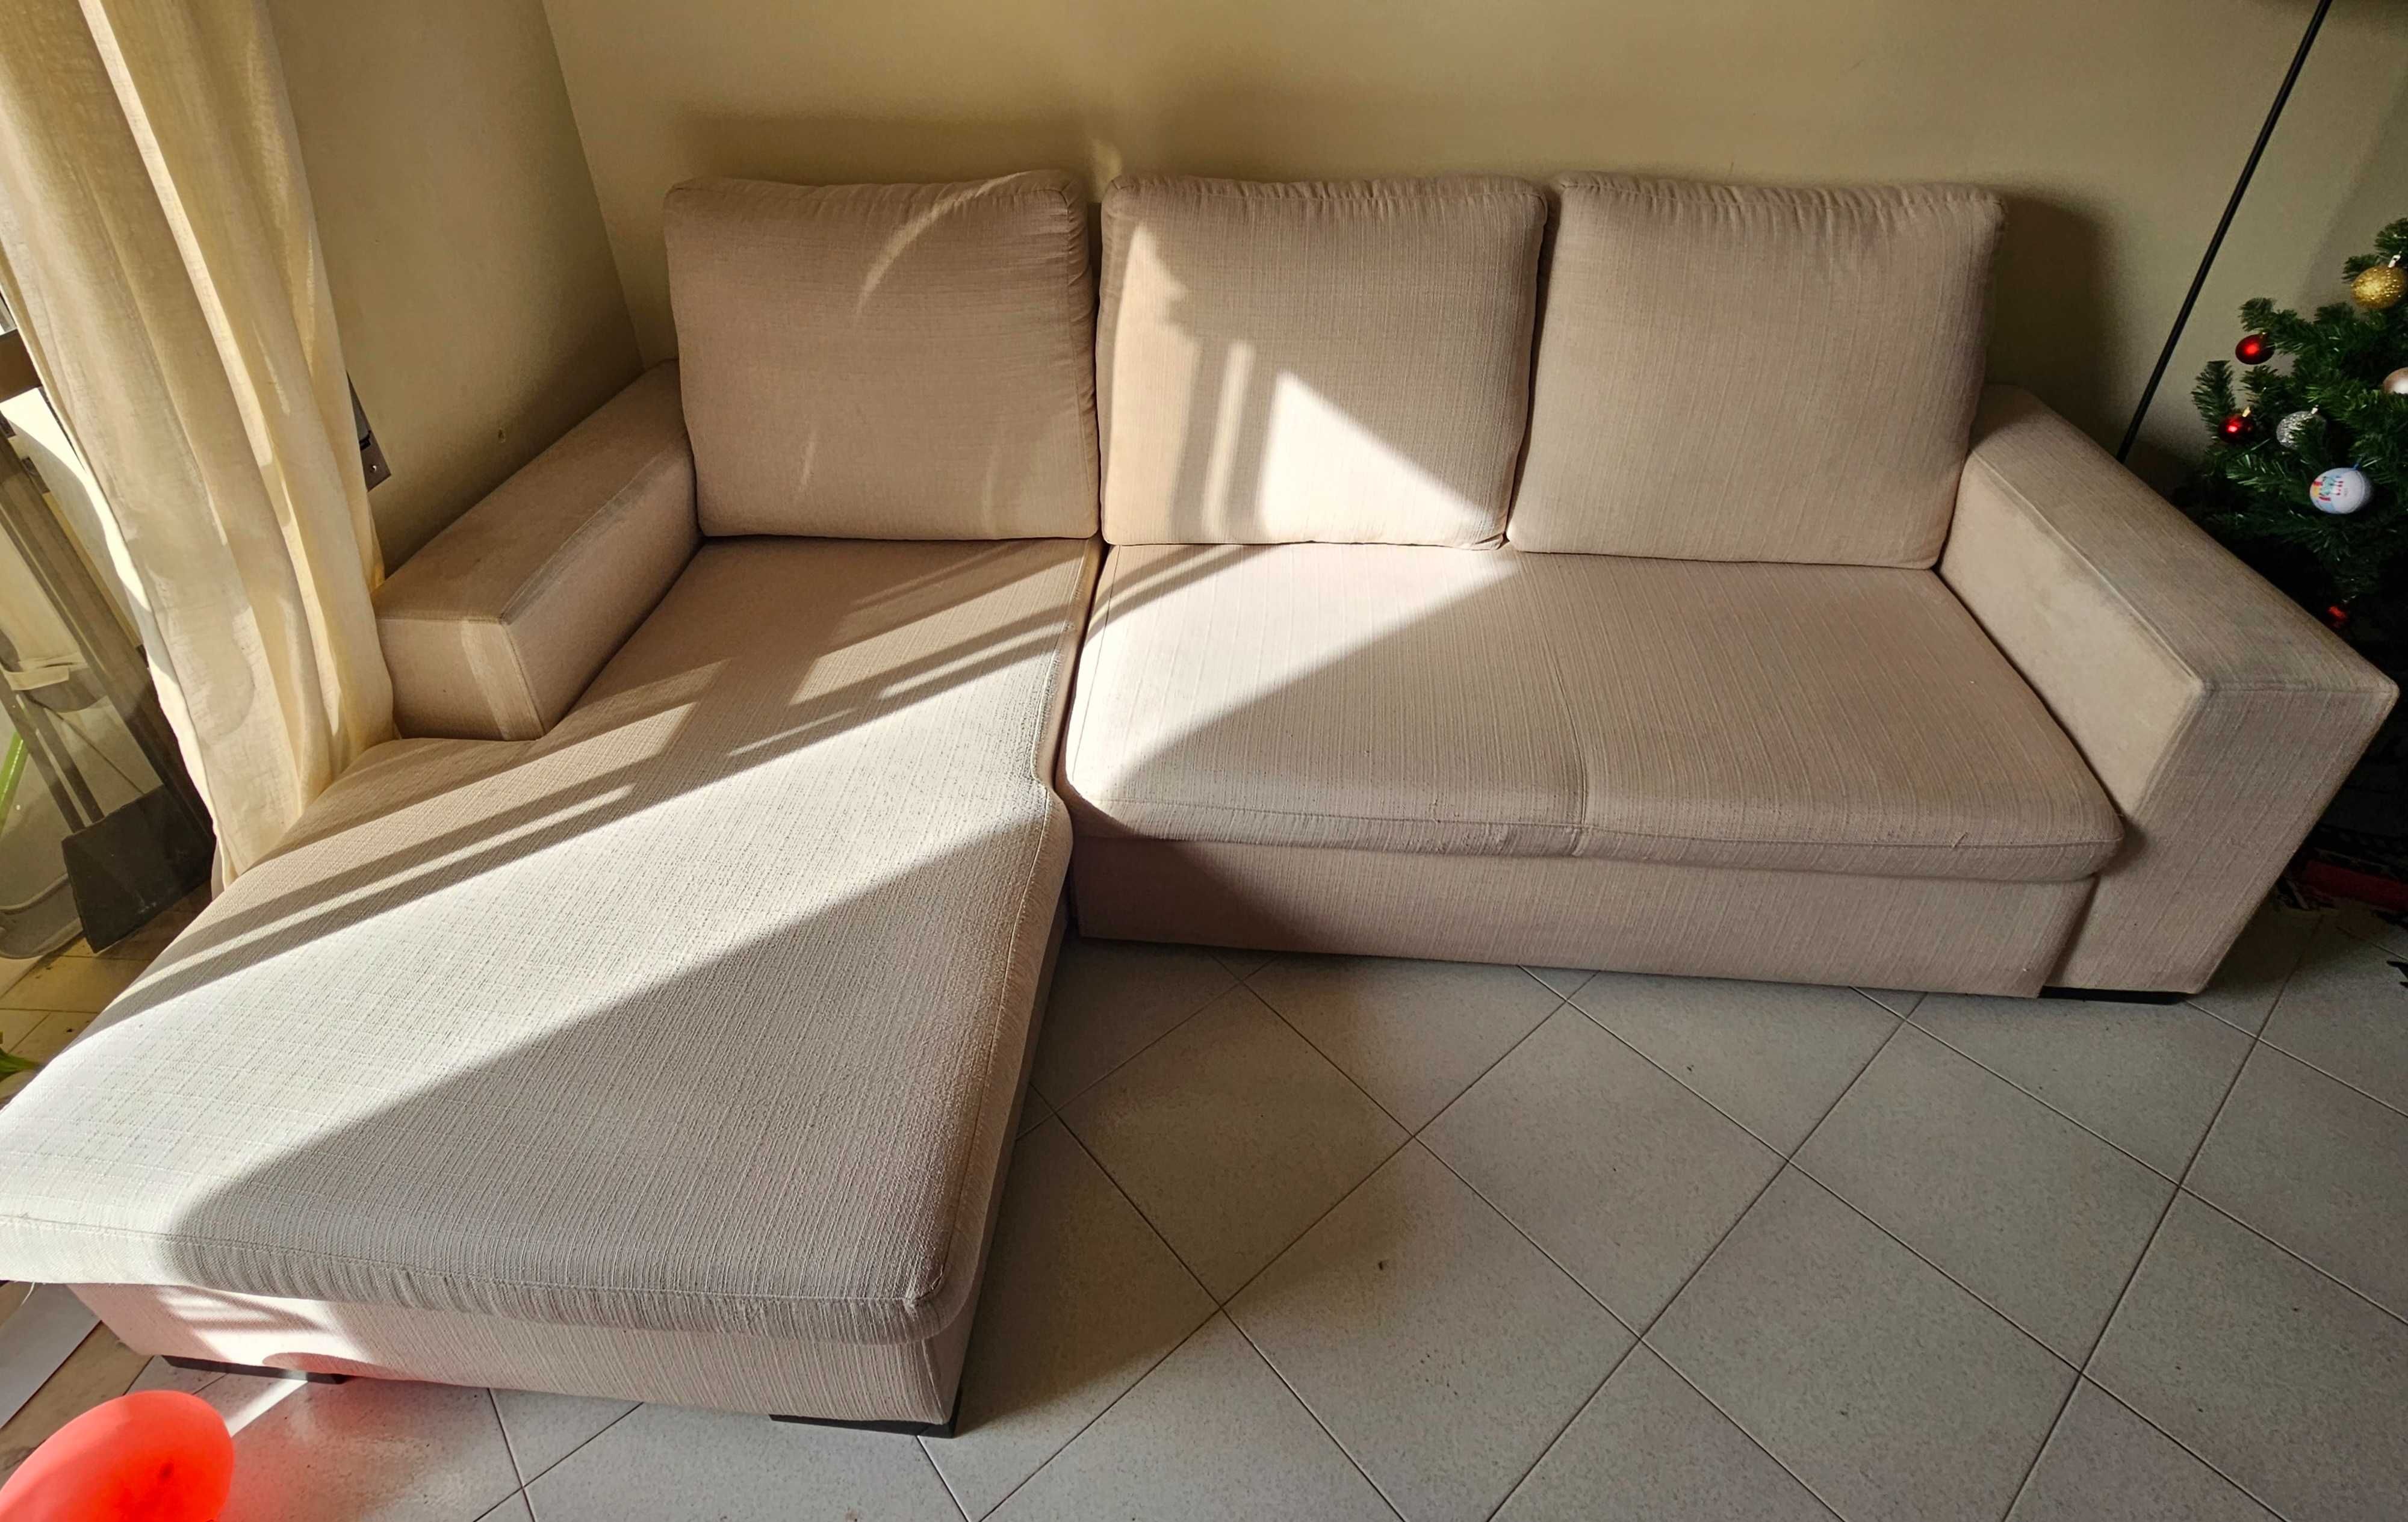 Sofá-cama de 3 lugares com chaise long